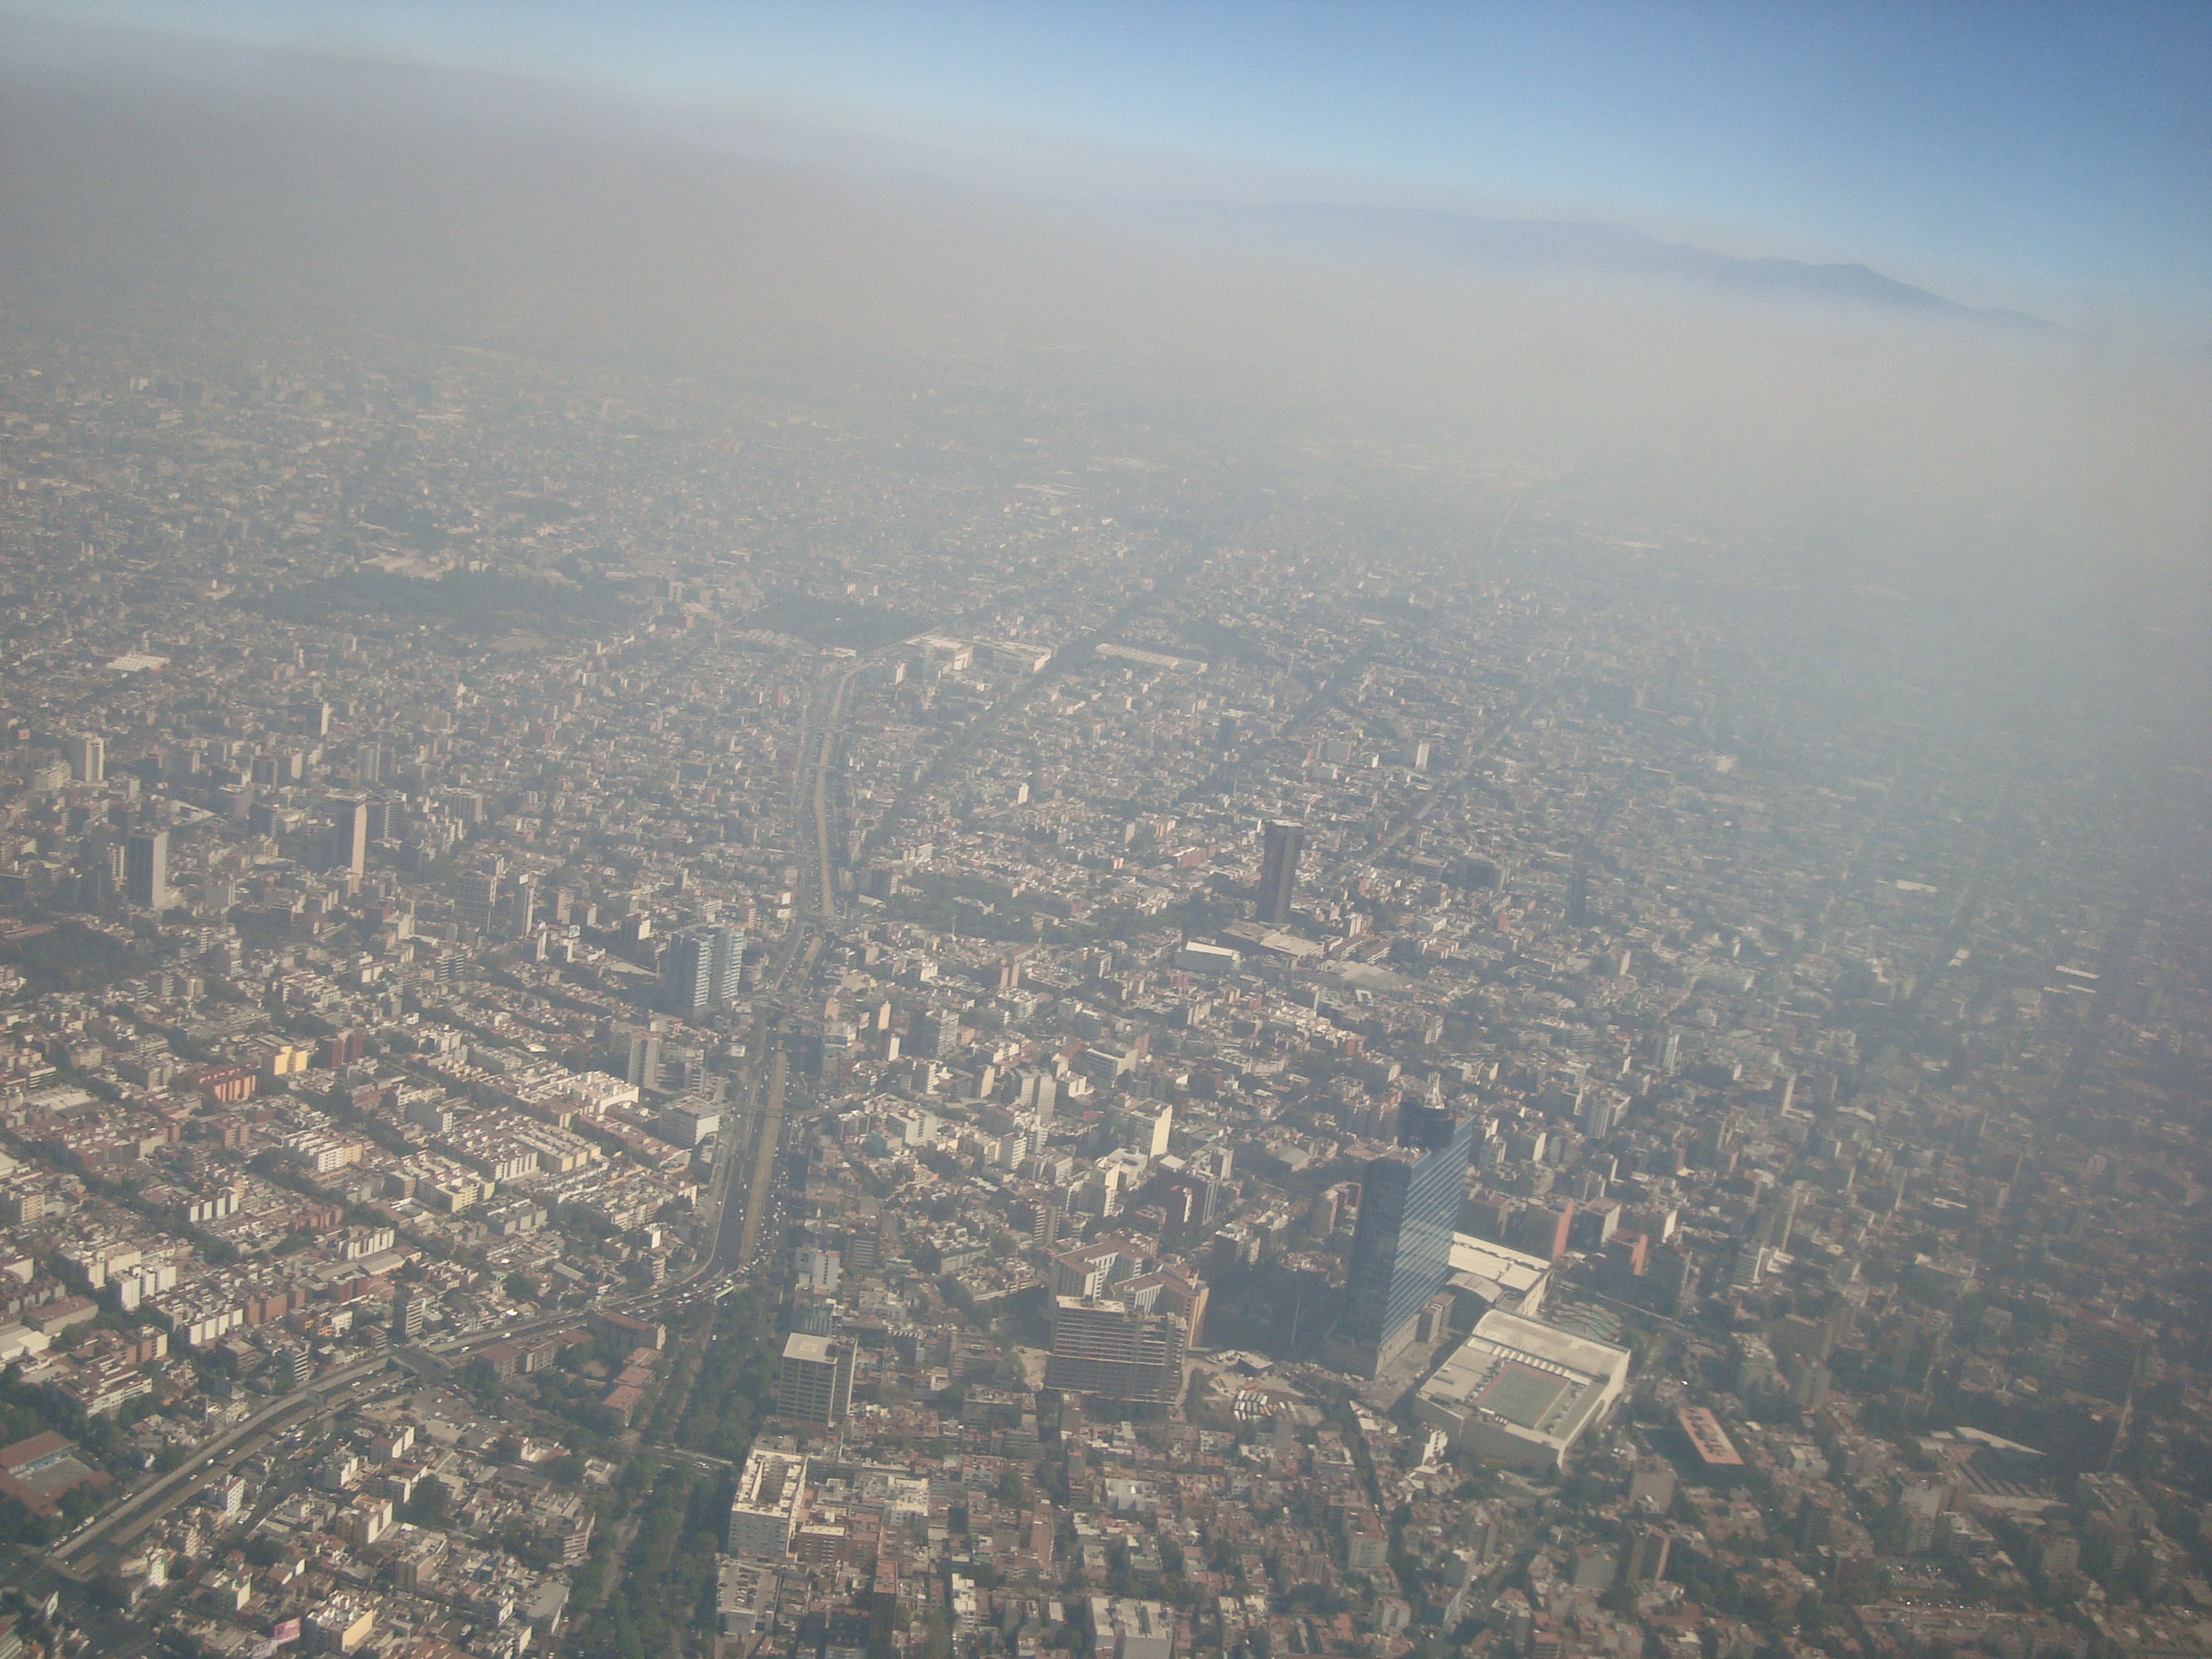  Ciudad de México podría convertirse en la nueva China por contaminación, advierte especialista